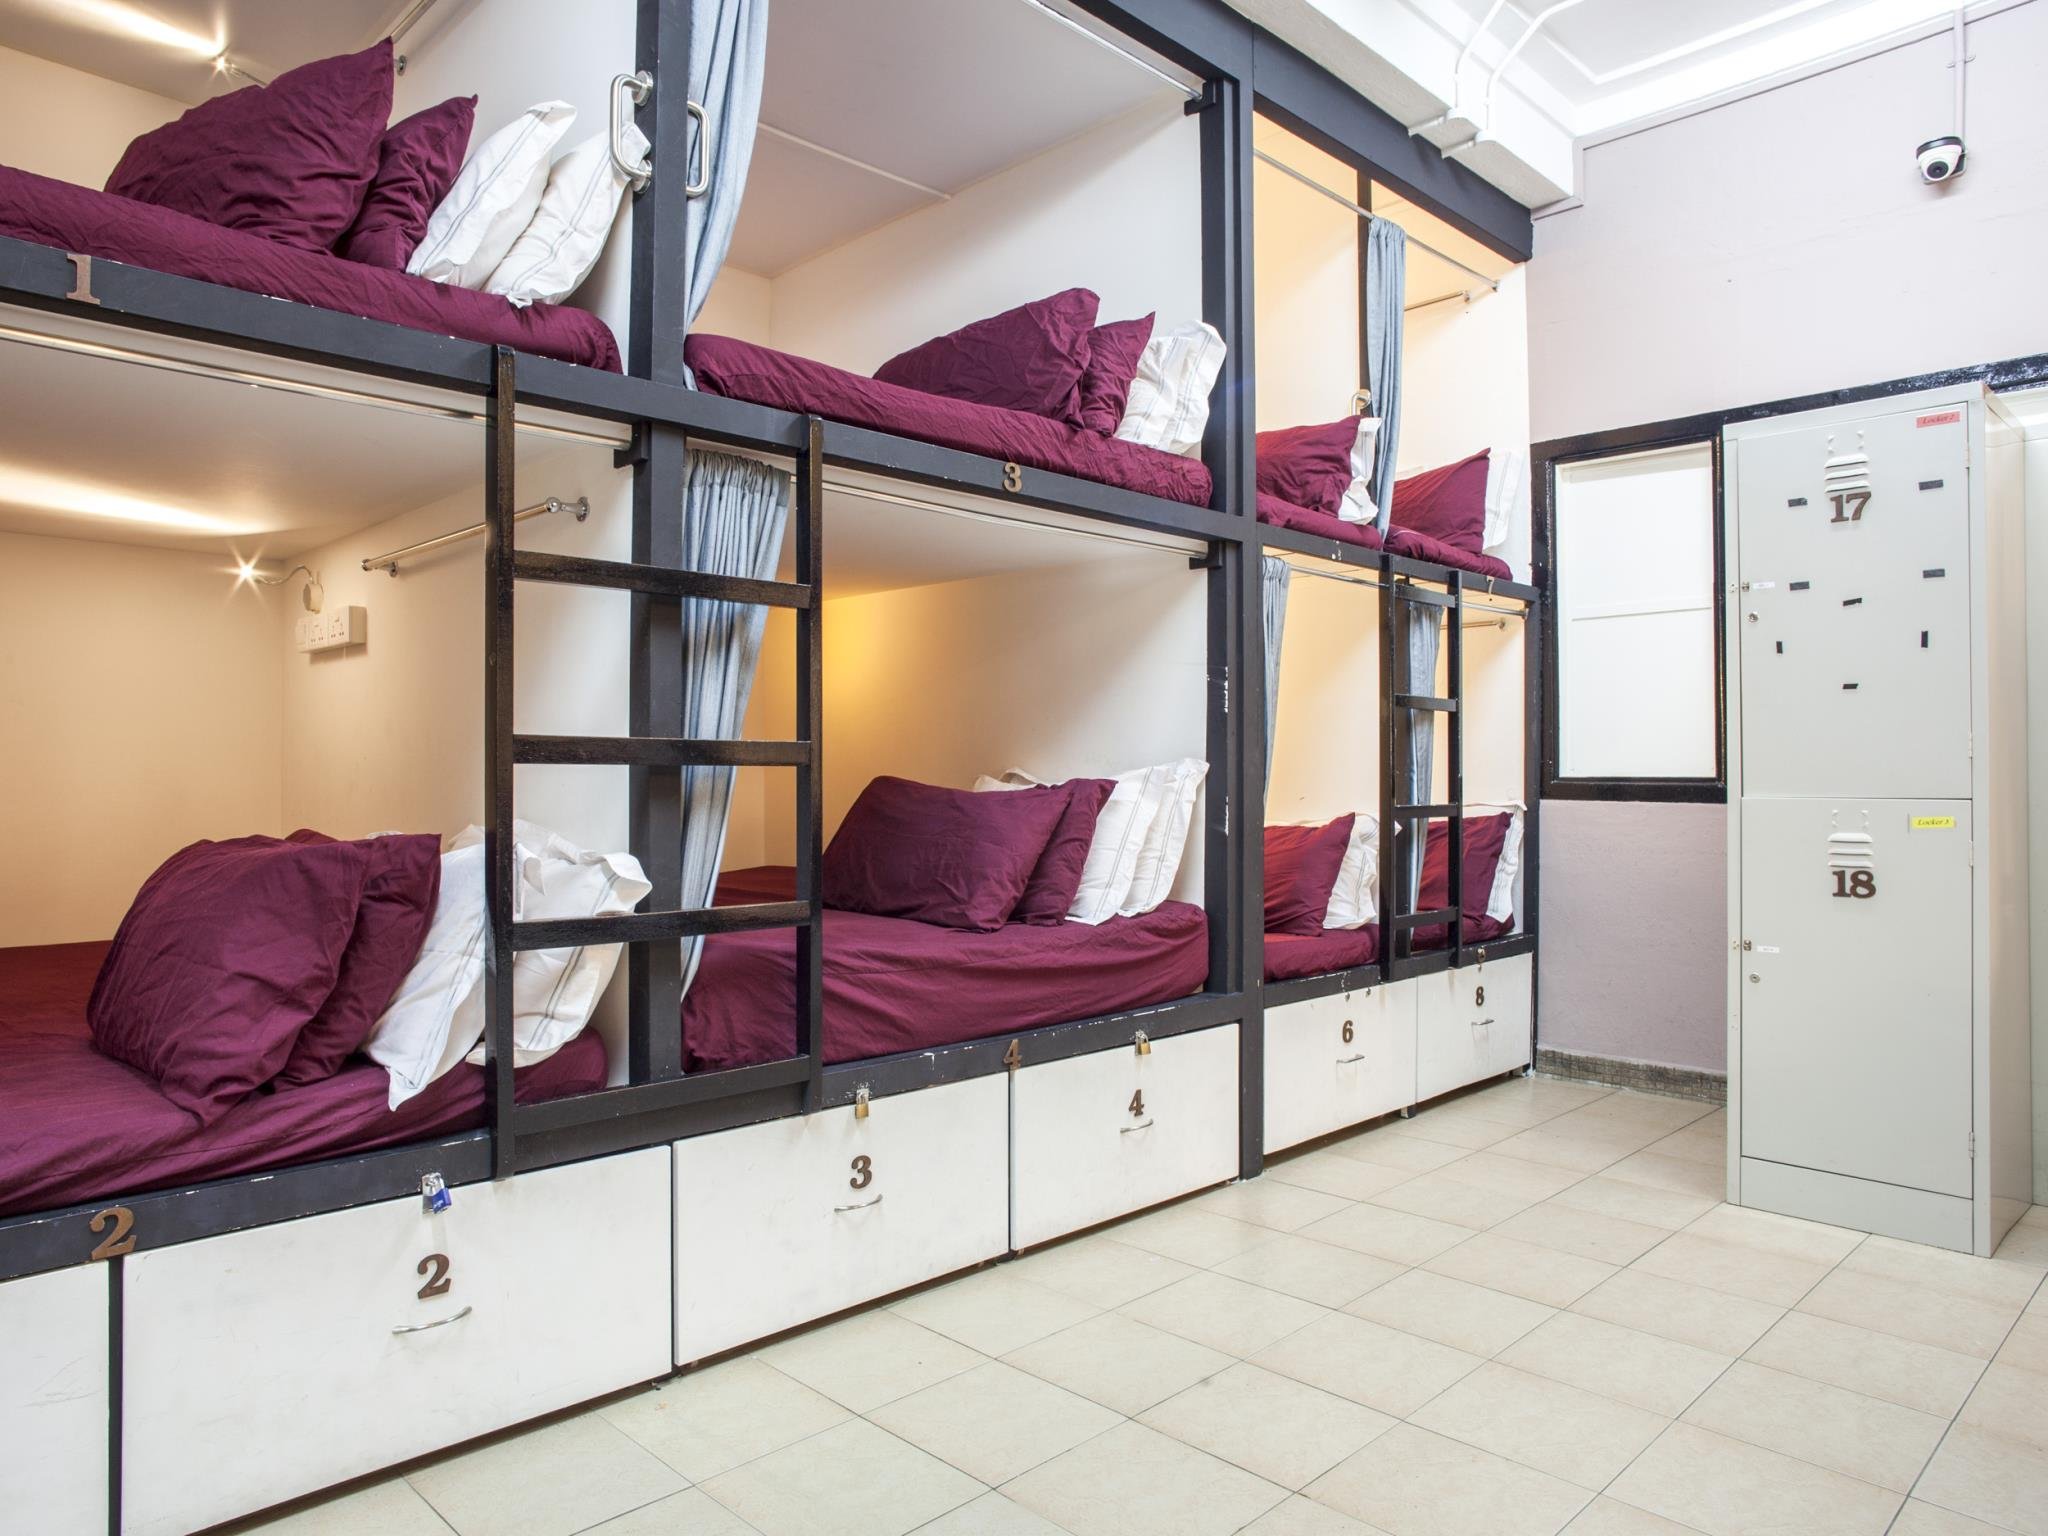 Общежития примеры. Кровати для хостела. Двухъярусные кровати для хостелов. Капсульные кровати для хостела. Кровати капсулы для хостела.